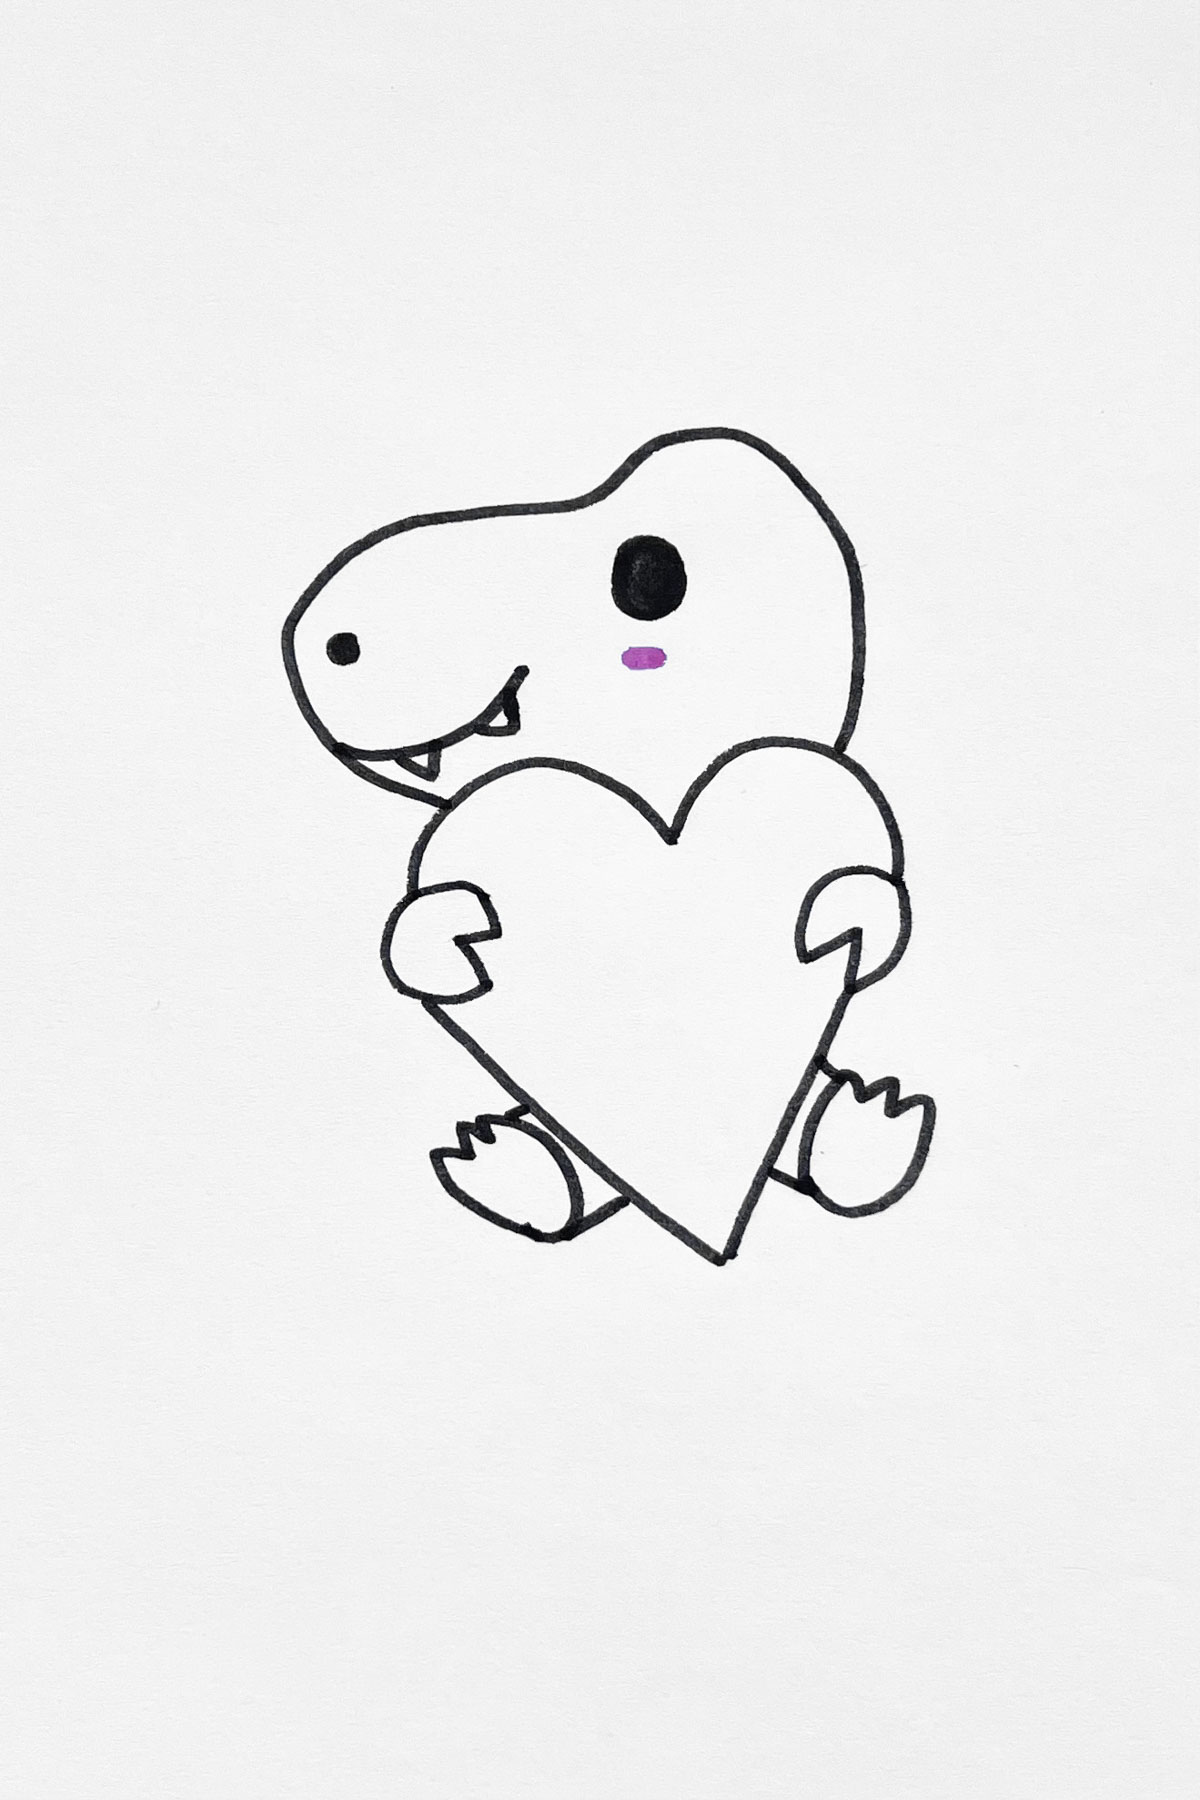  Lovely Little Dinosaur drawing